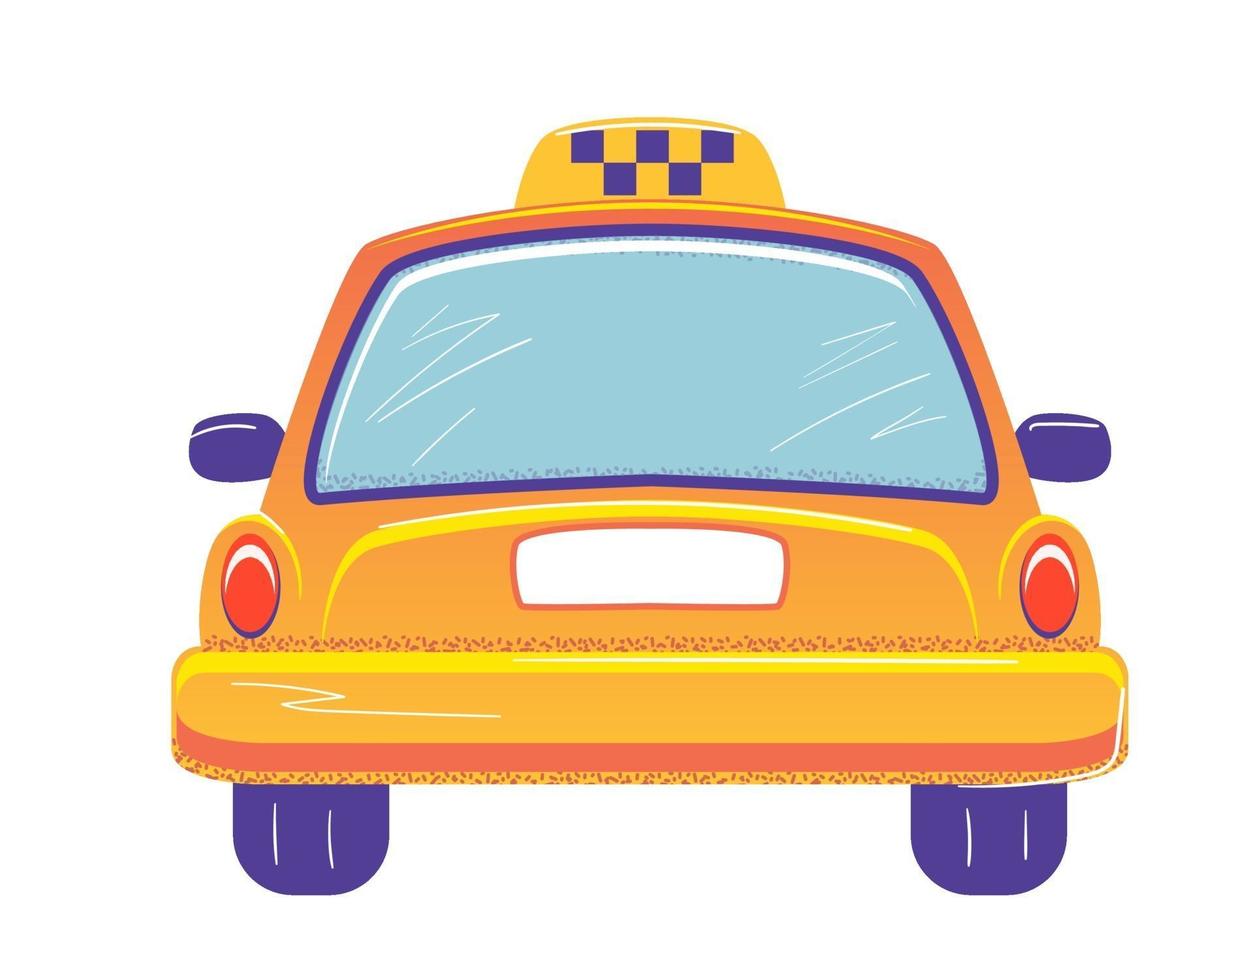 taxi cab achteraanzicht platte sjabloon voor spandoek op witte achtergrond. lege ruimte voor nummer. gele auto auto vectorillustratie. geïsoleerde transport service teken. achteruitkijk concept vector